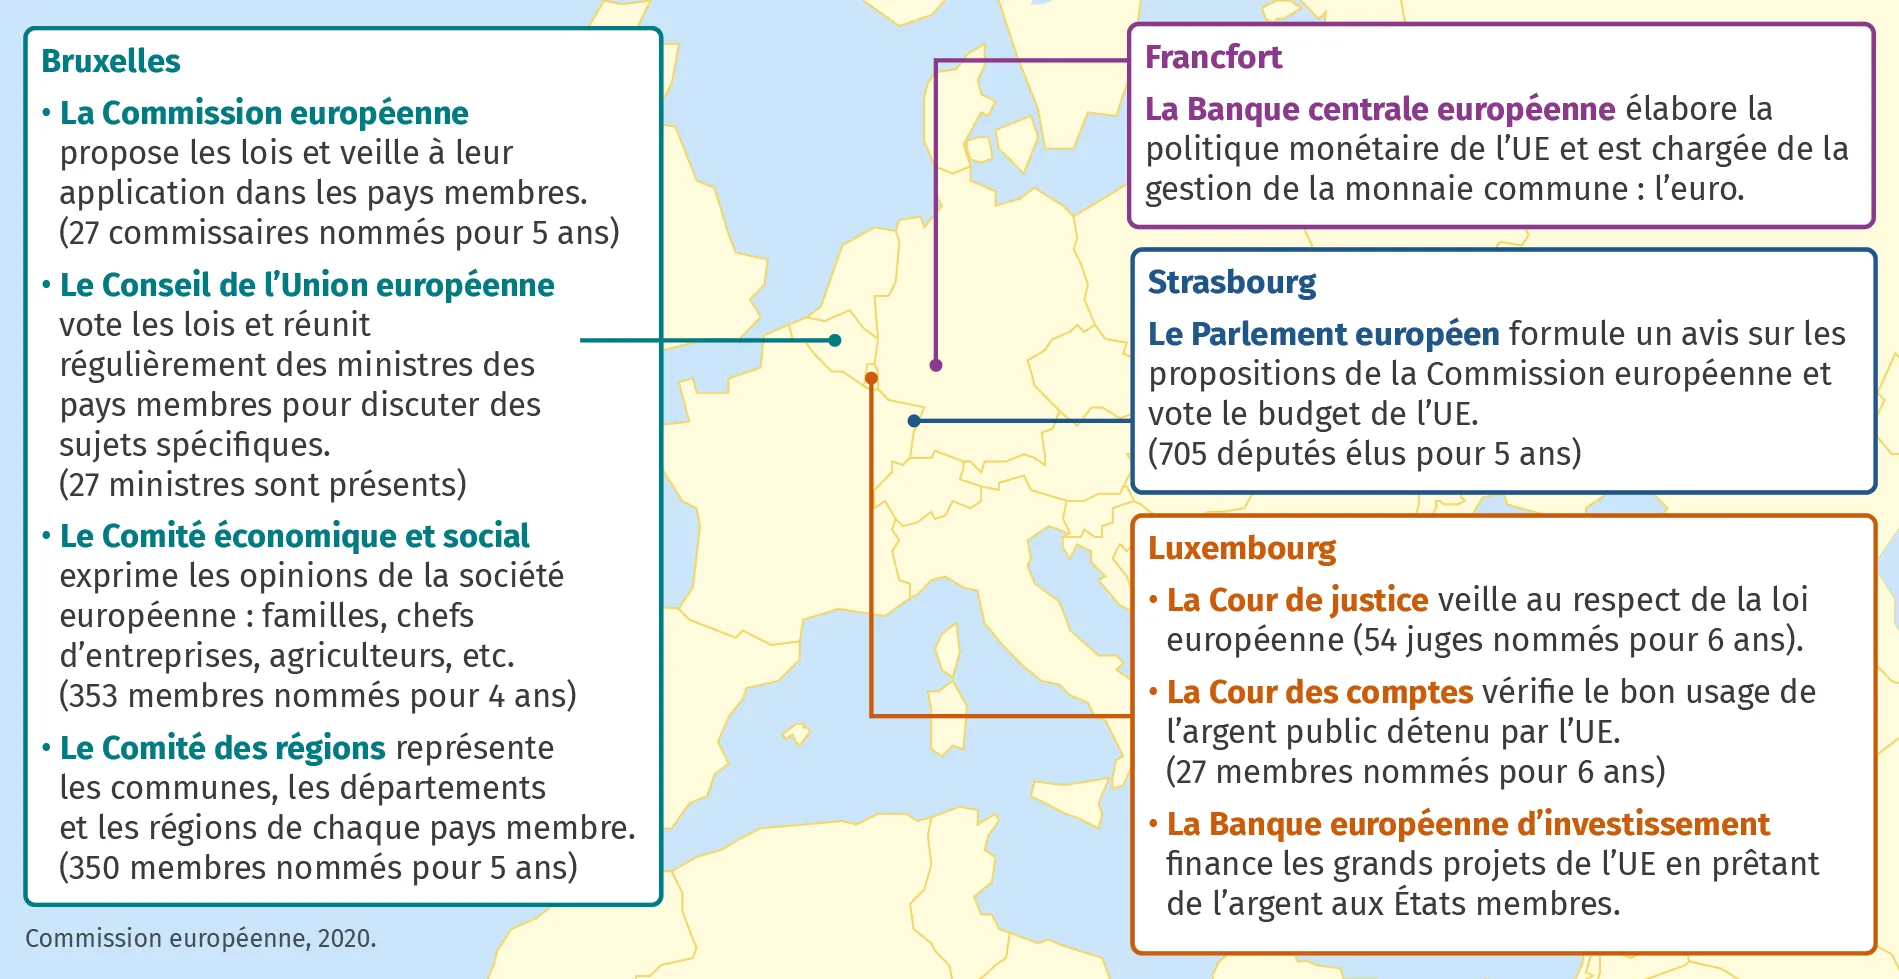 Les principales institutions de l'Union européenne